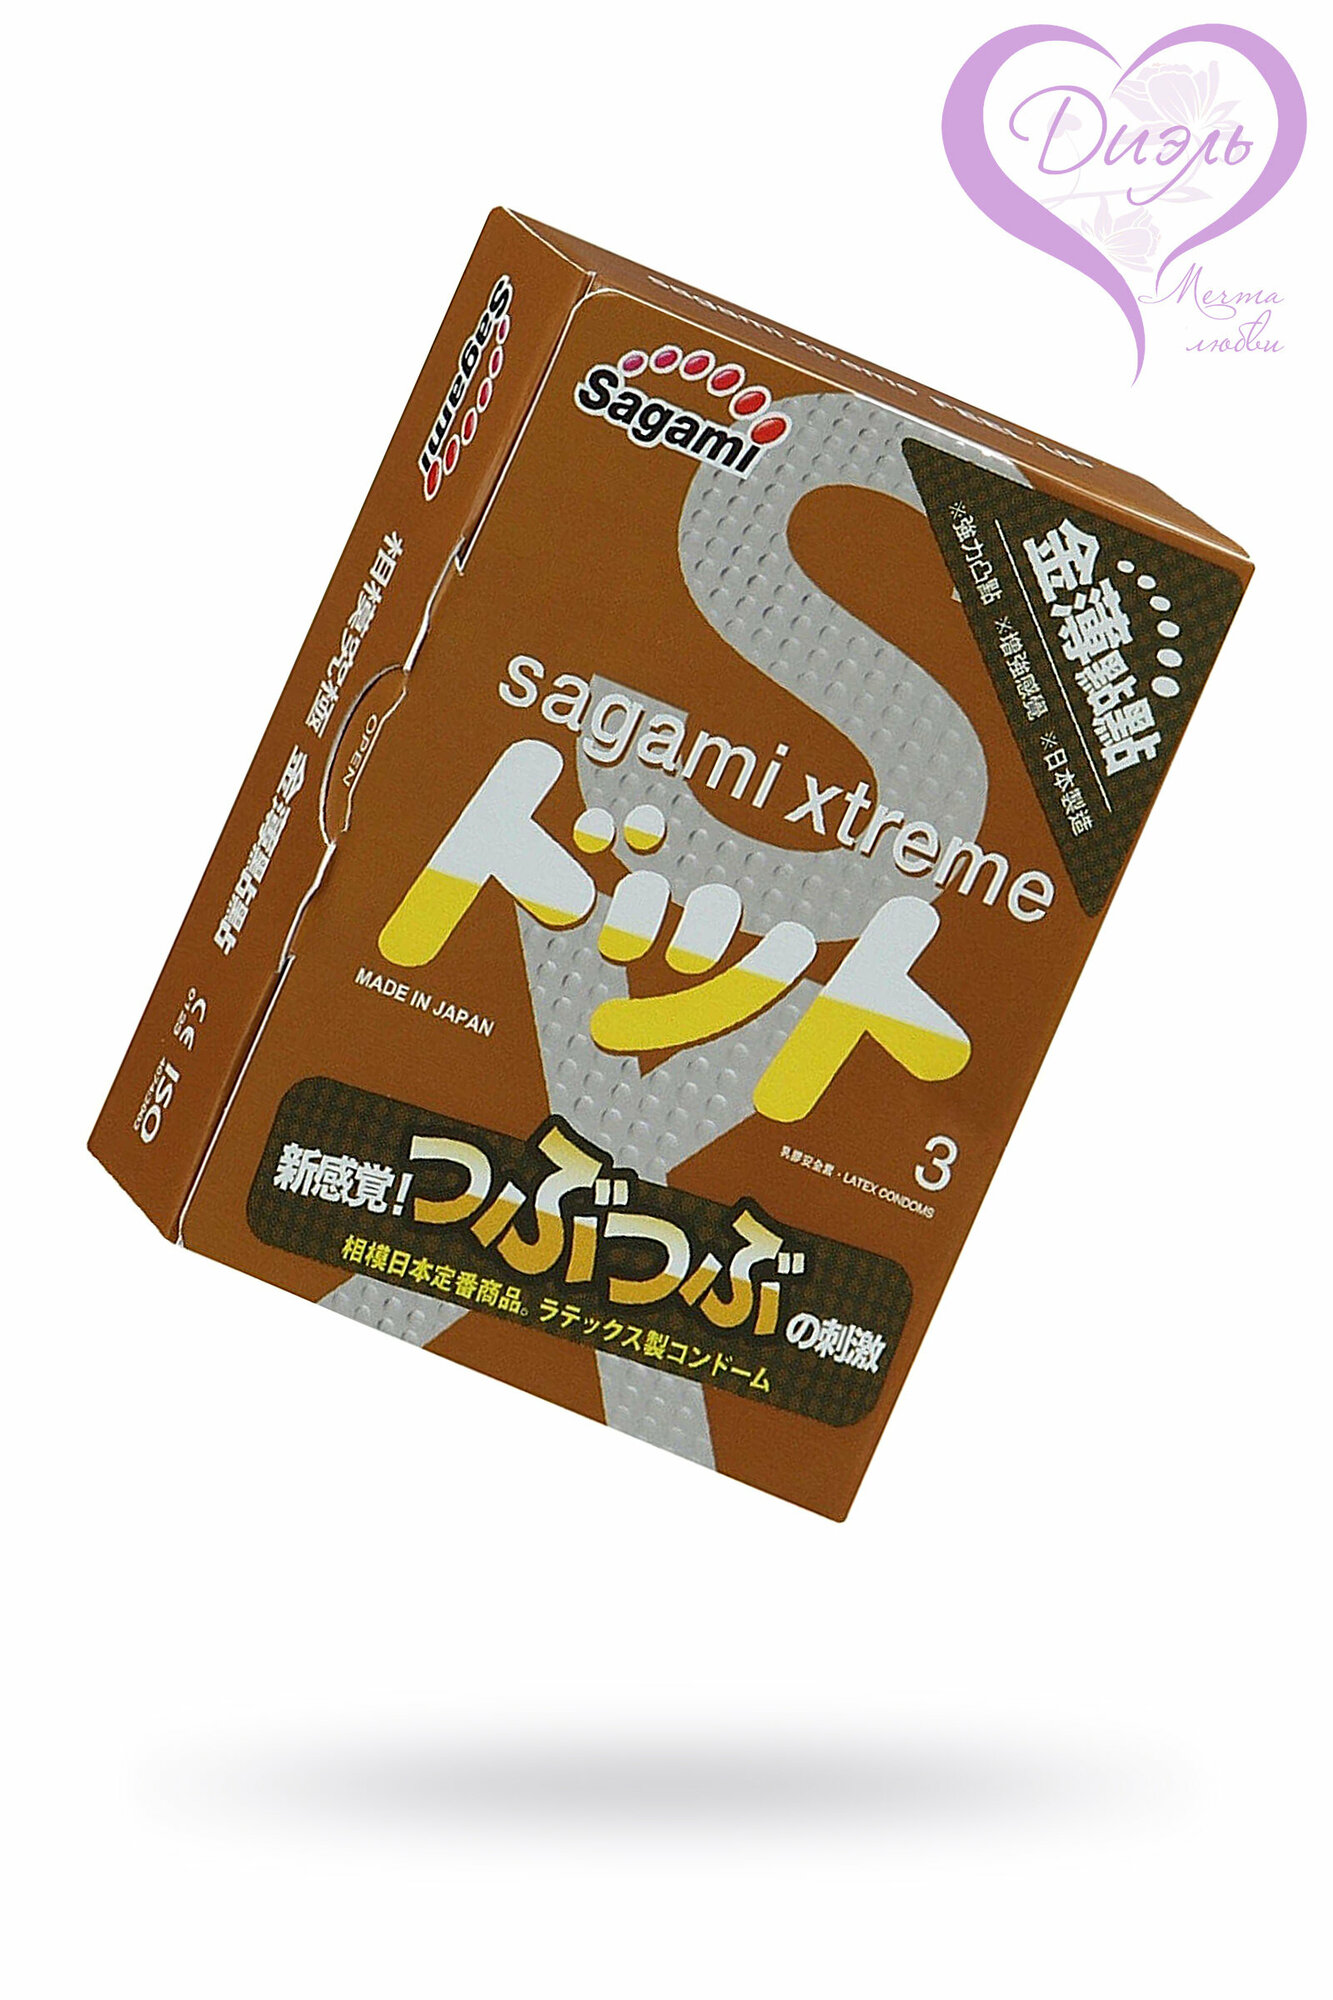 Презервативы анатомической формы с рельефной текстурой Sagami Xtreme Feel UP - 3 шт.